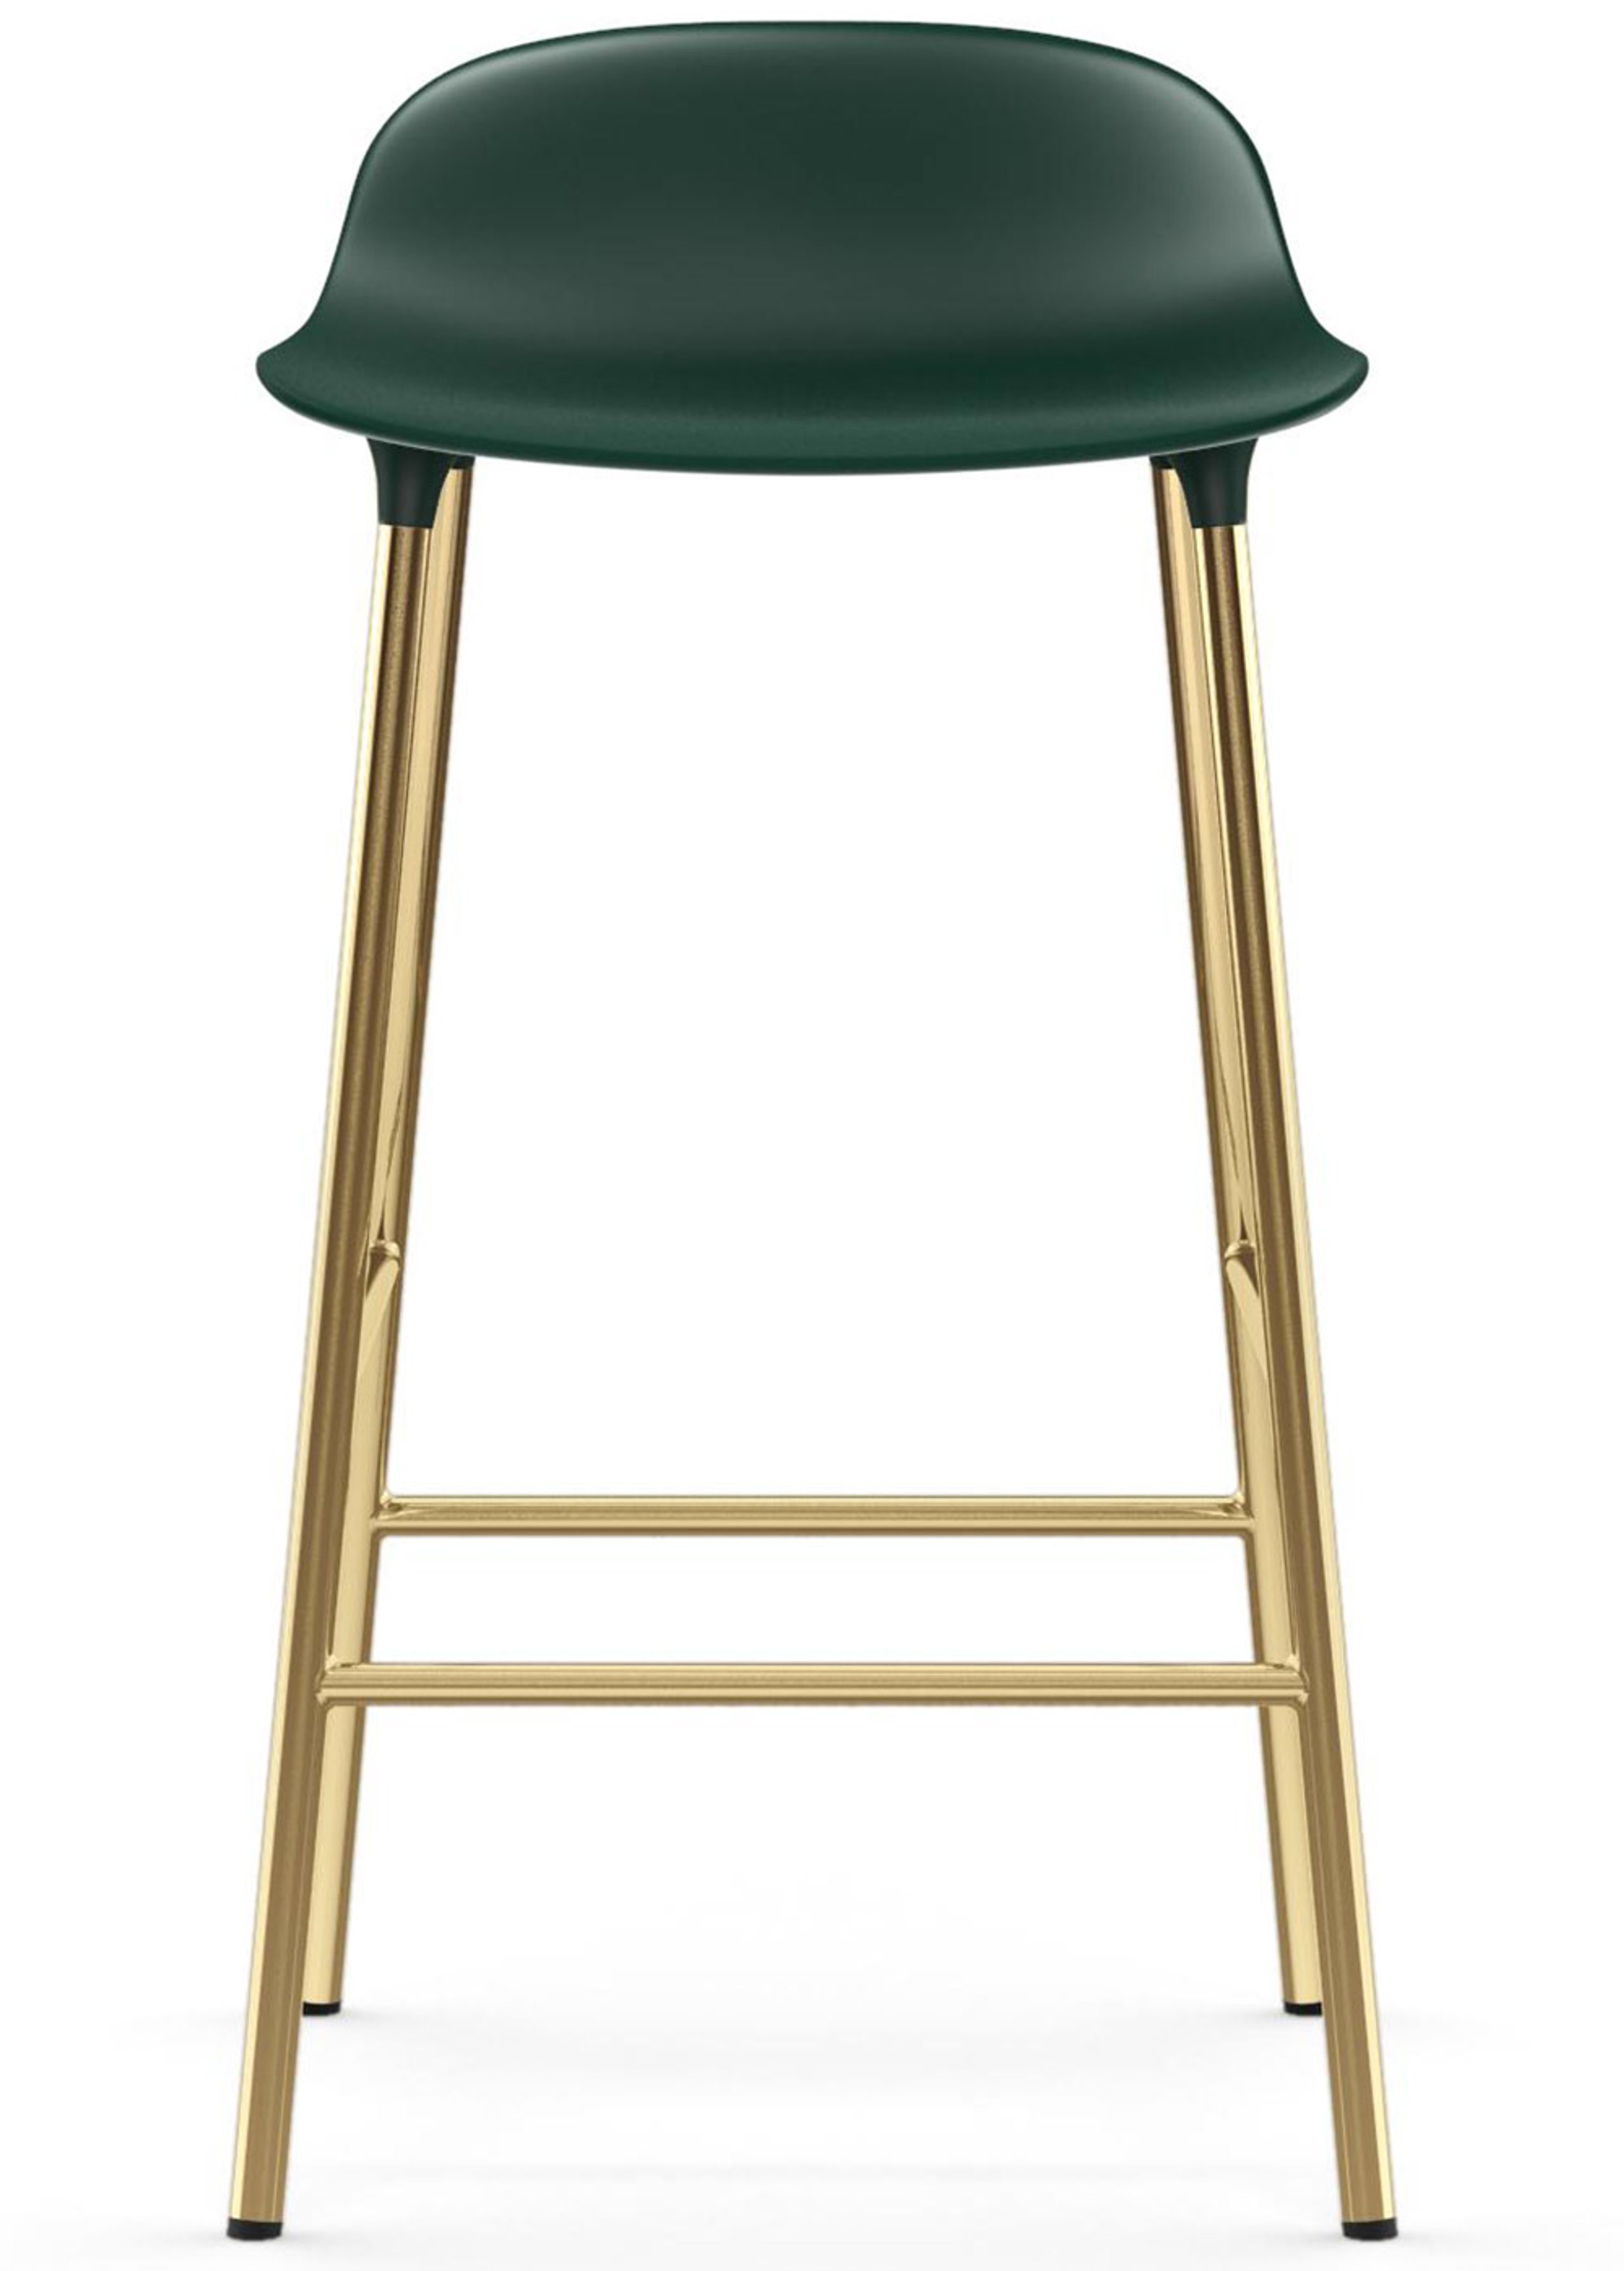 Normann Copenhagen - Tabouret de bar - Form Barstool - 65 cm - Steel, Chrome & Brass - Green / Brass